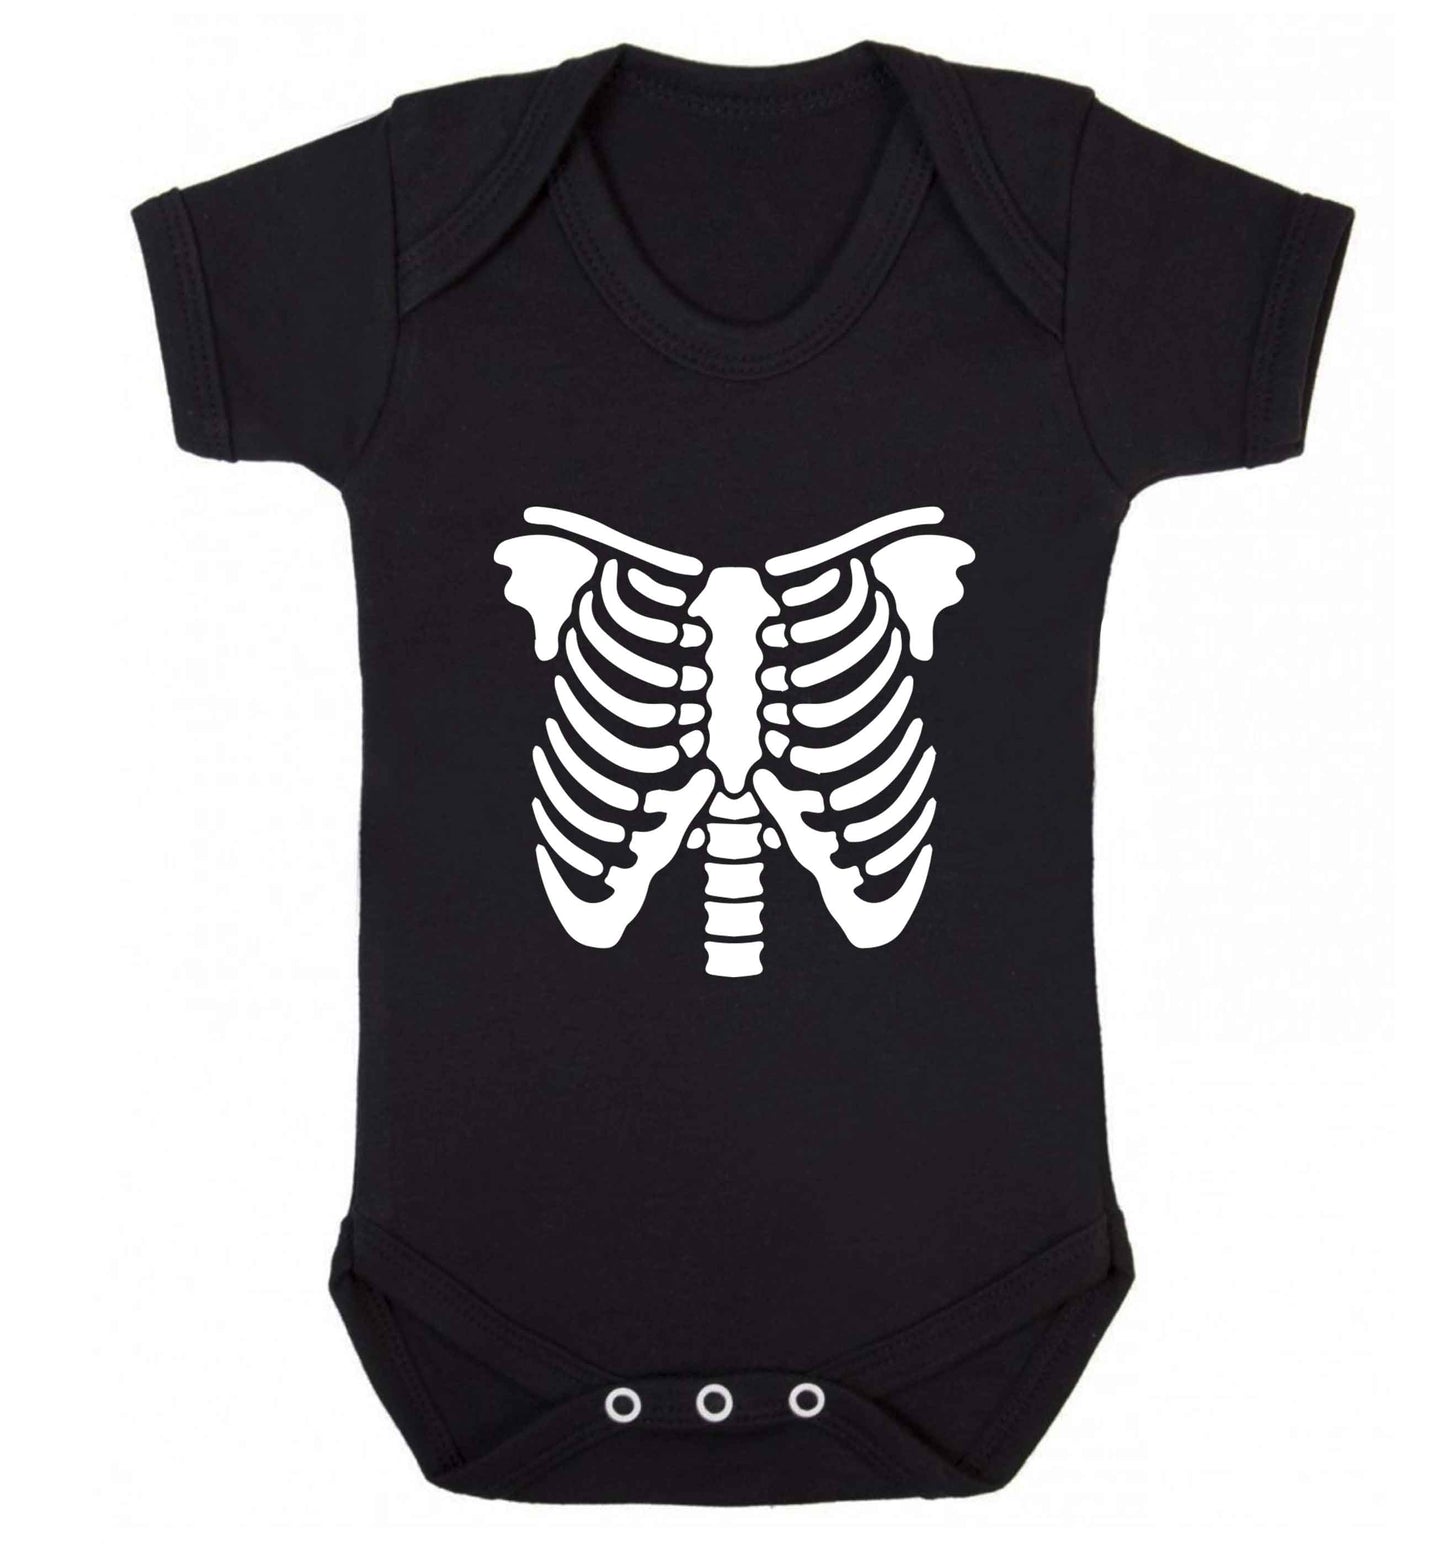 Skeleton ribcage baby vest black 18-24 months